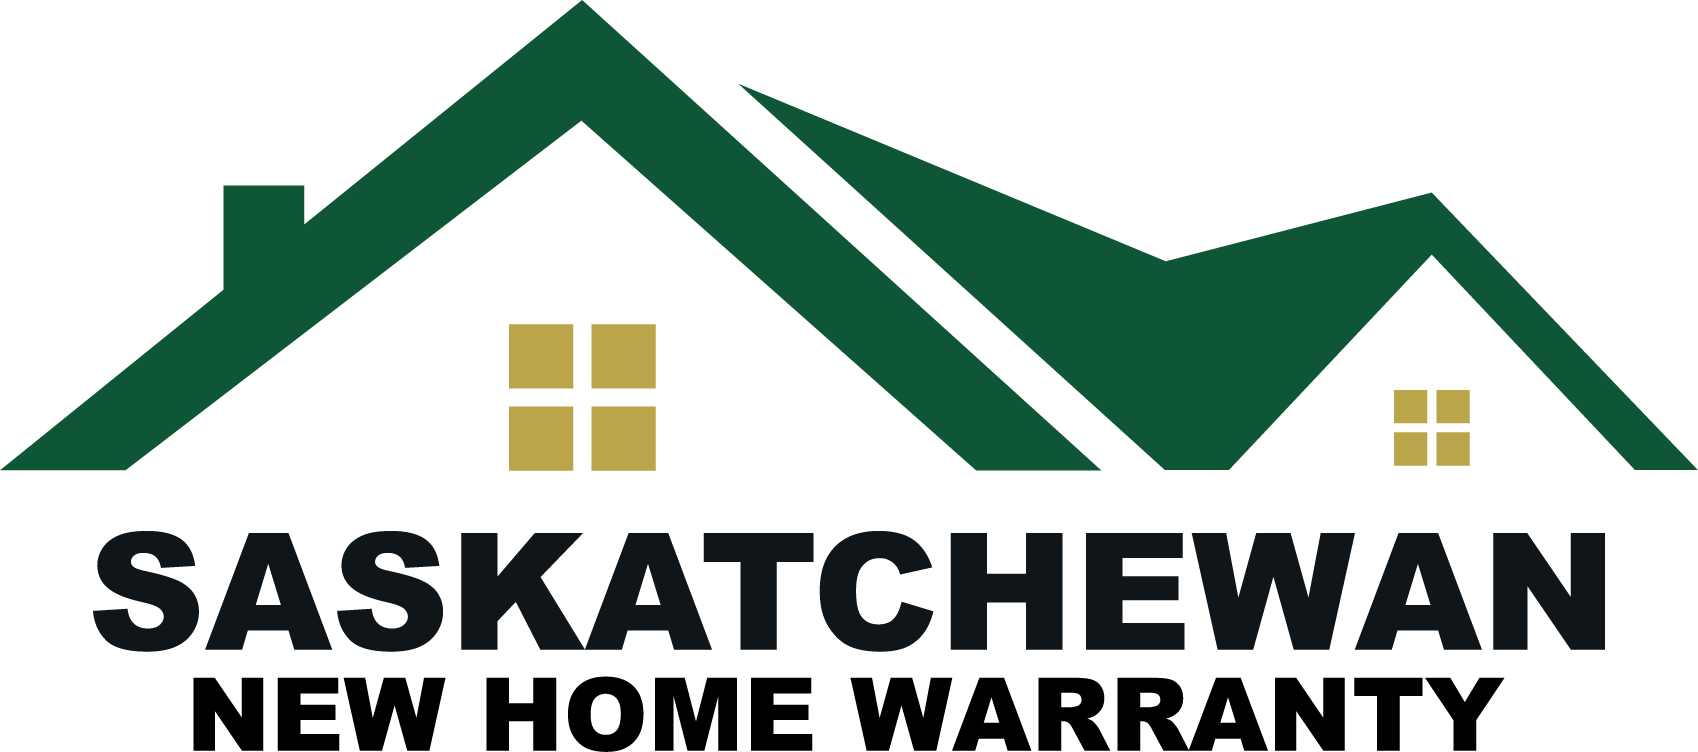 Saskatchewan New Home Warranty Program